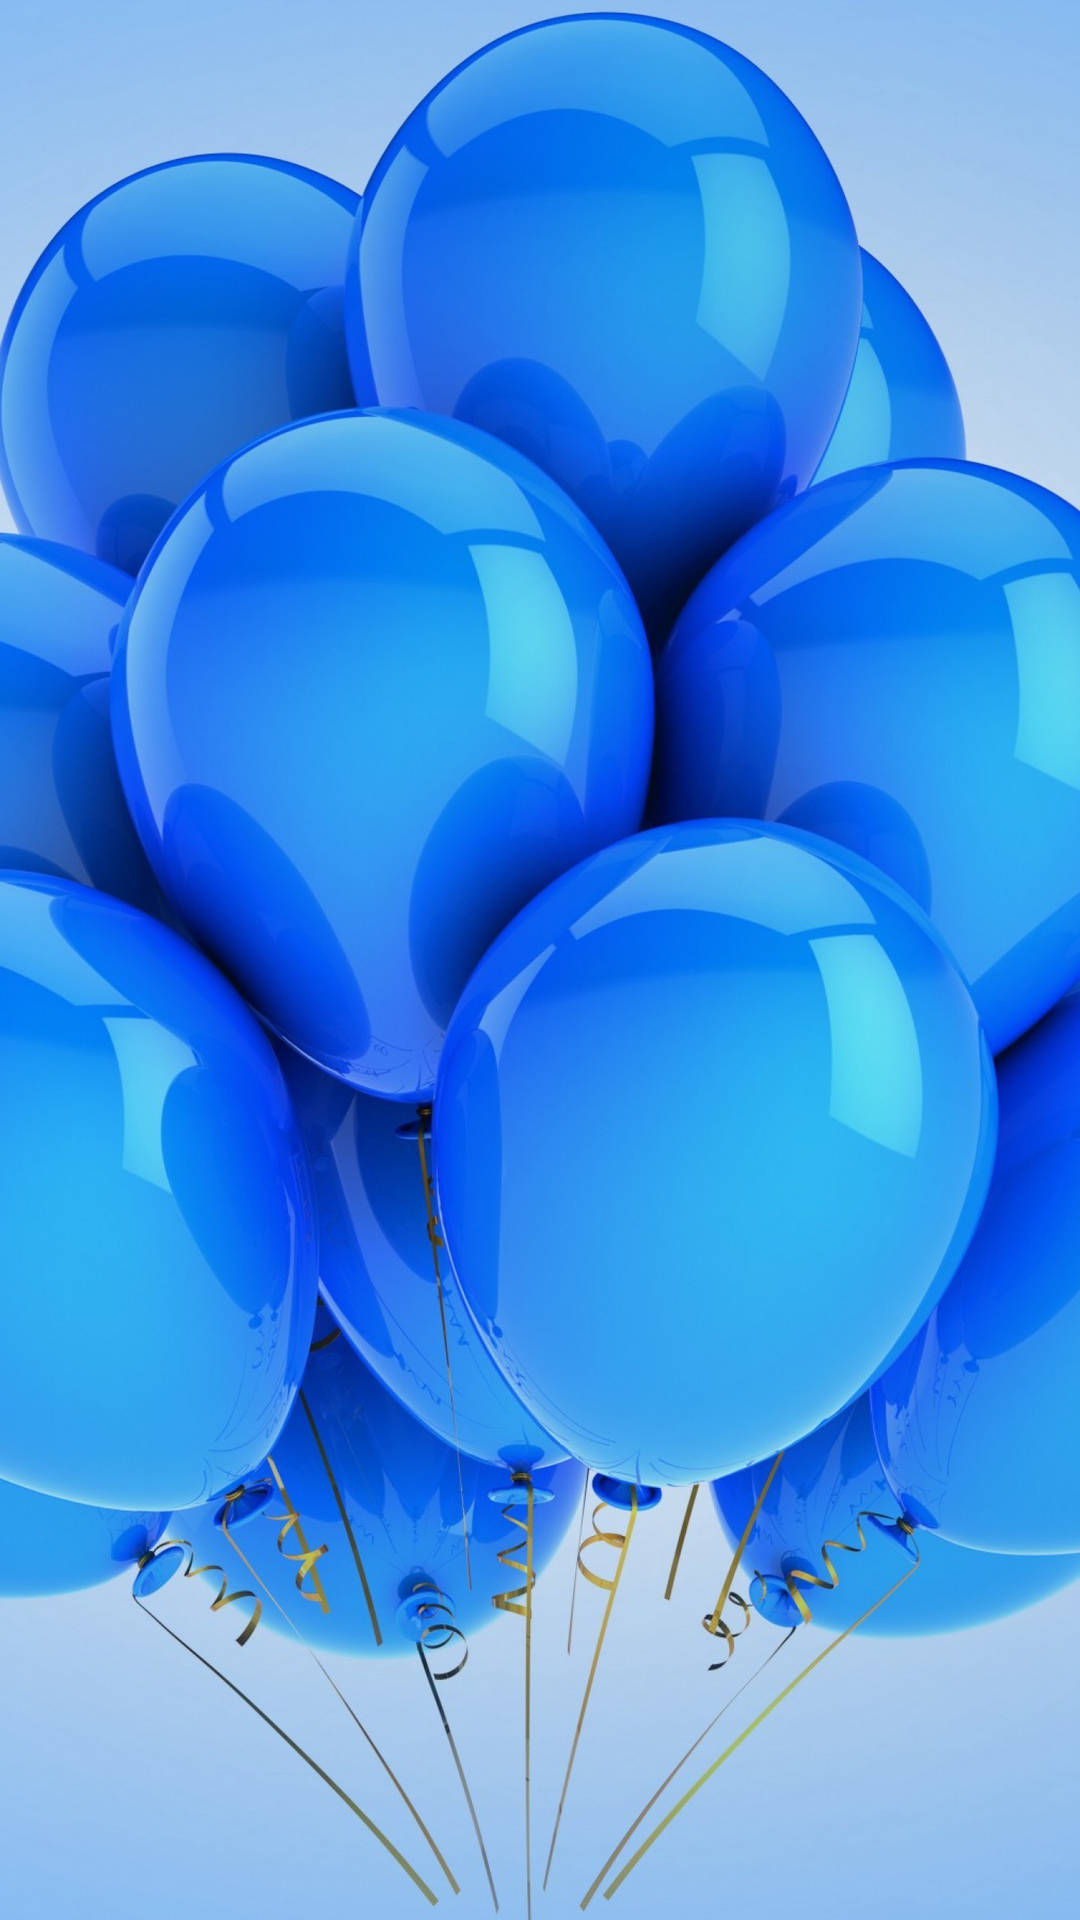 Aesthetic Blue Balloons Wallpaper